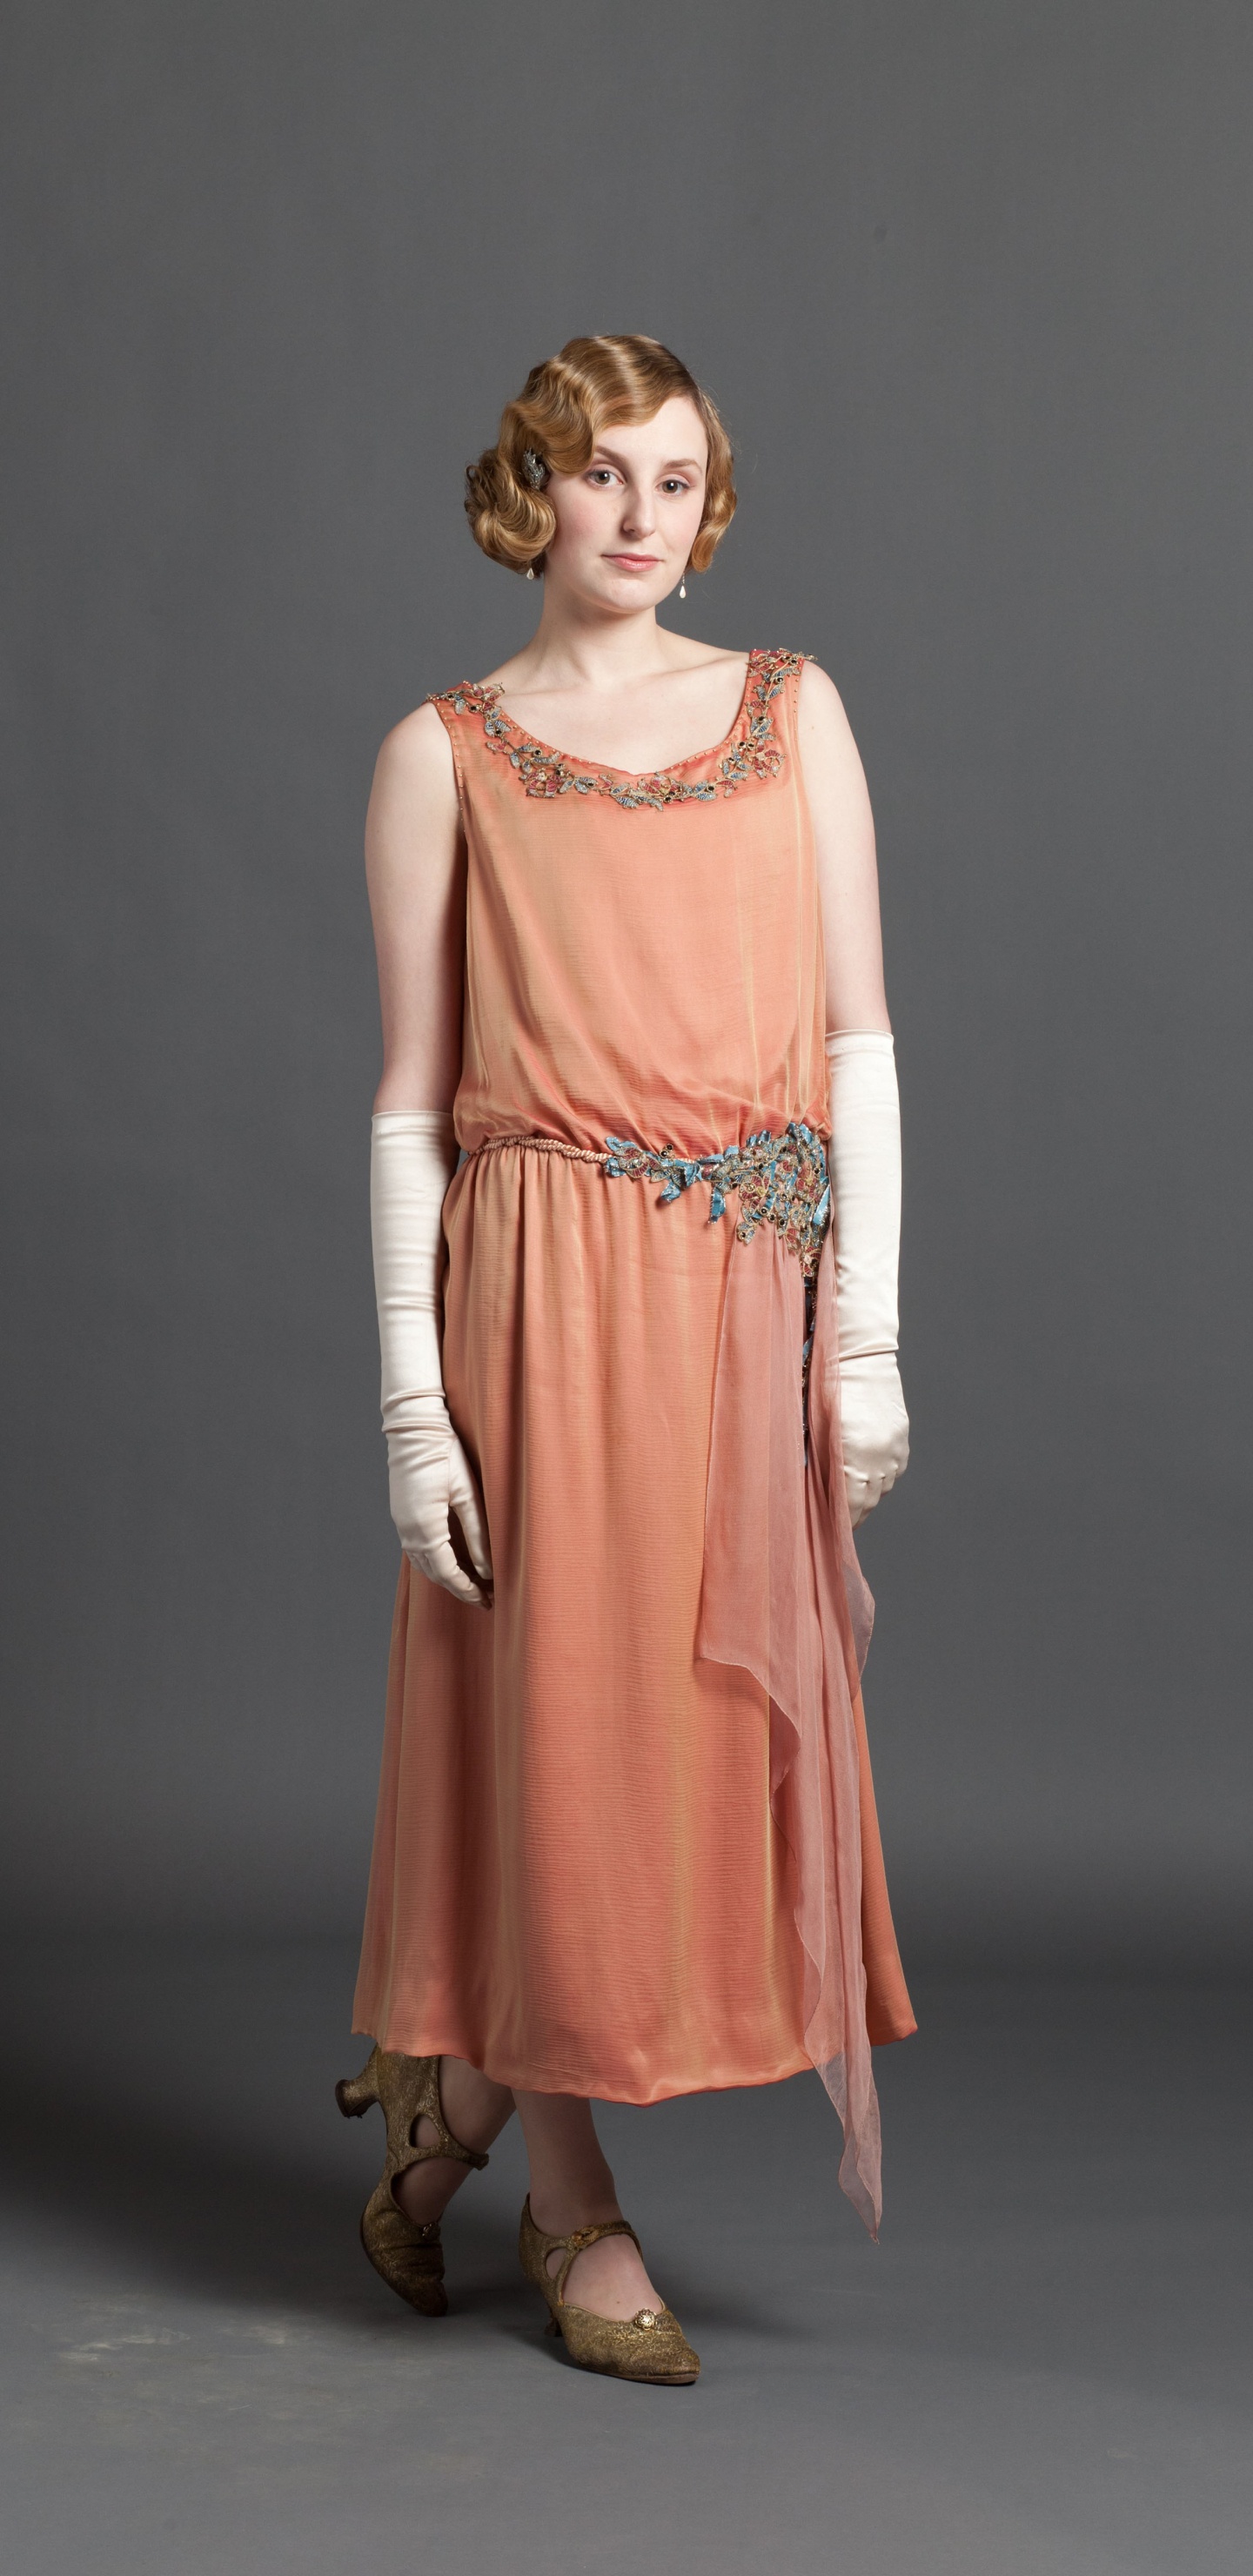 Downton Abbey, Vêtement, Modèle de Mode, Robe de Jour, Mode. Wallpaper in 1440x2960 Resolution